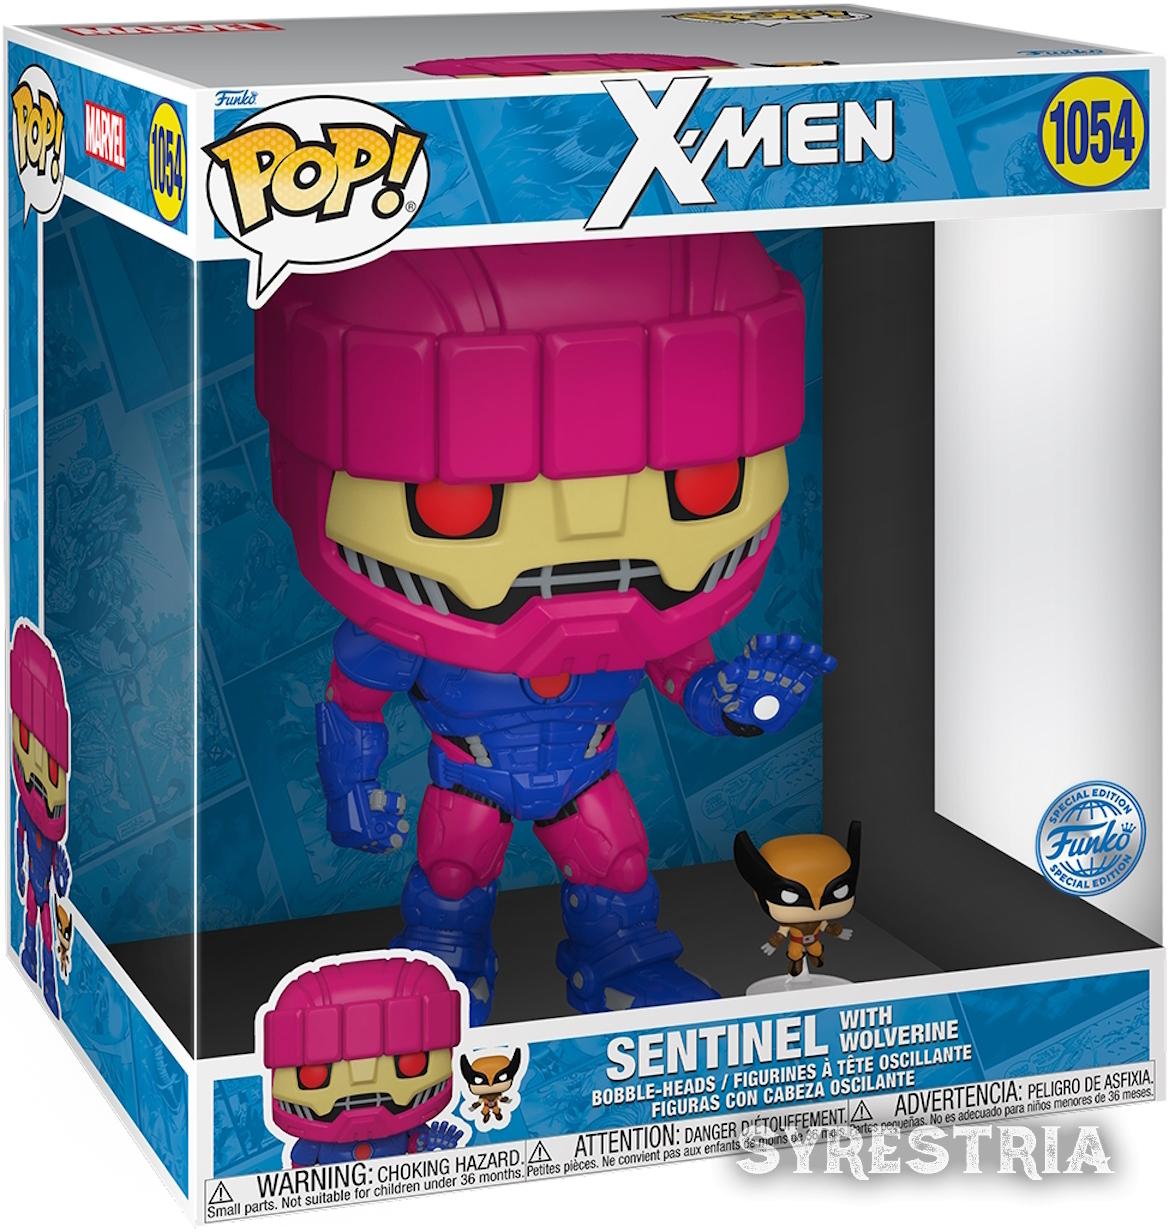 X-Men - Sentinel with Wolverine 1054  Special Edtion - Funko Pop! Vinyl Figur